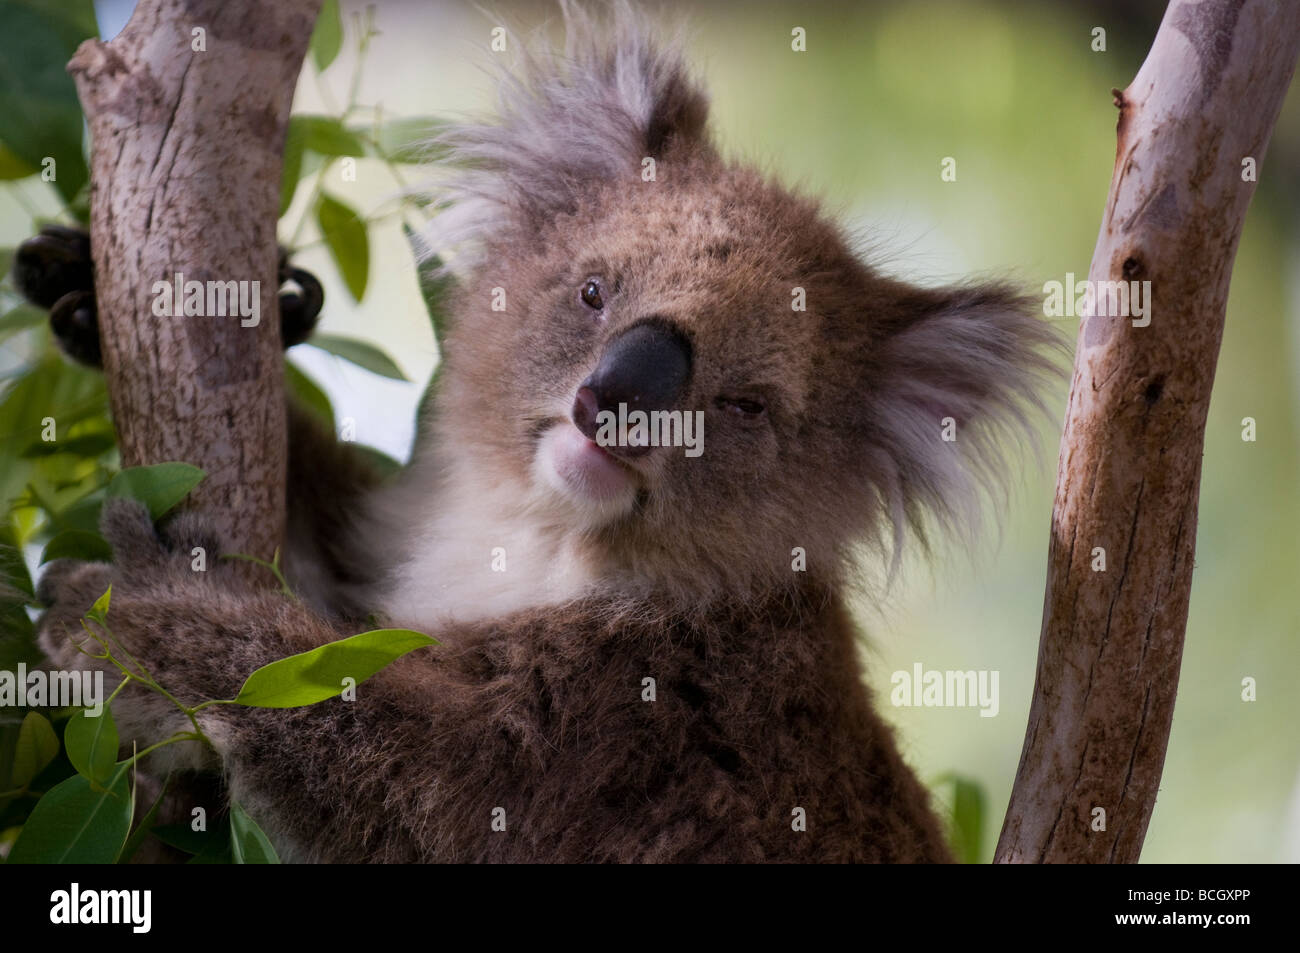 Koala Bear (Phascolarctos cinereus) in a zoo Stock Photo